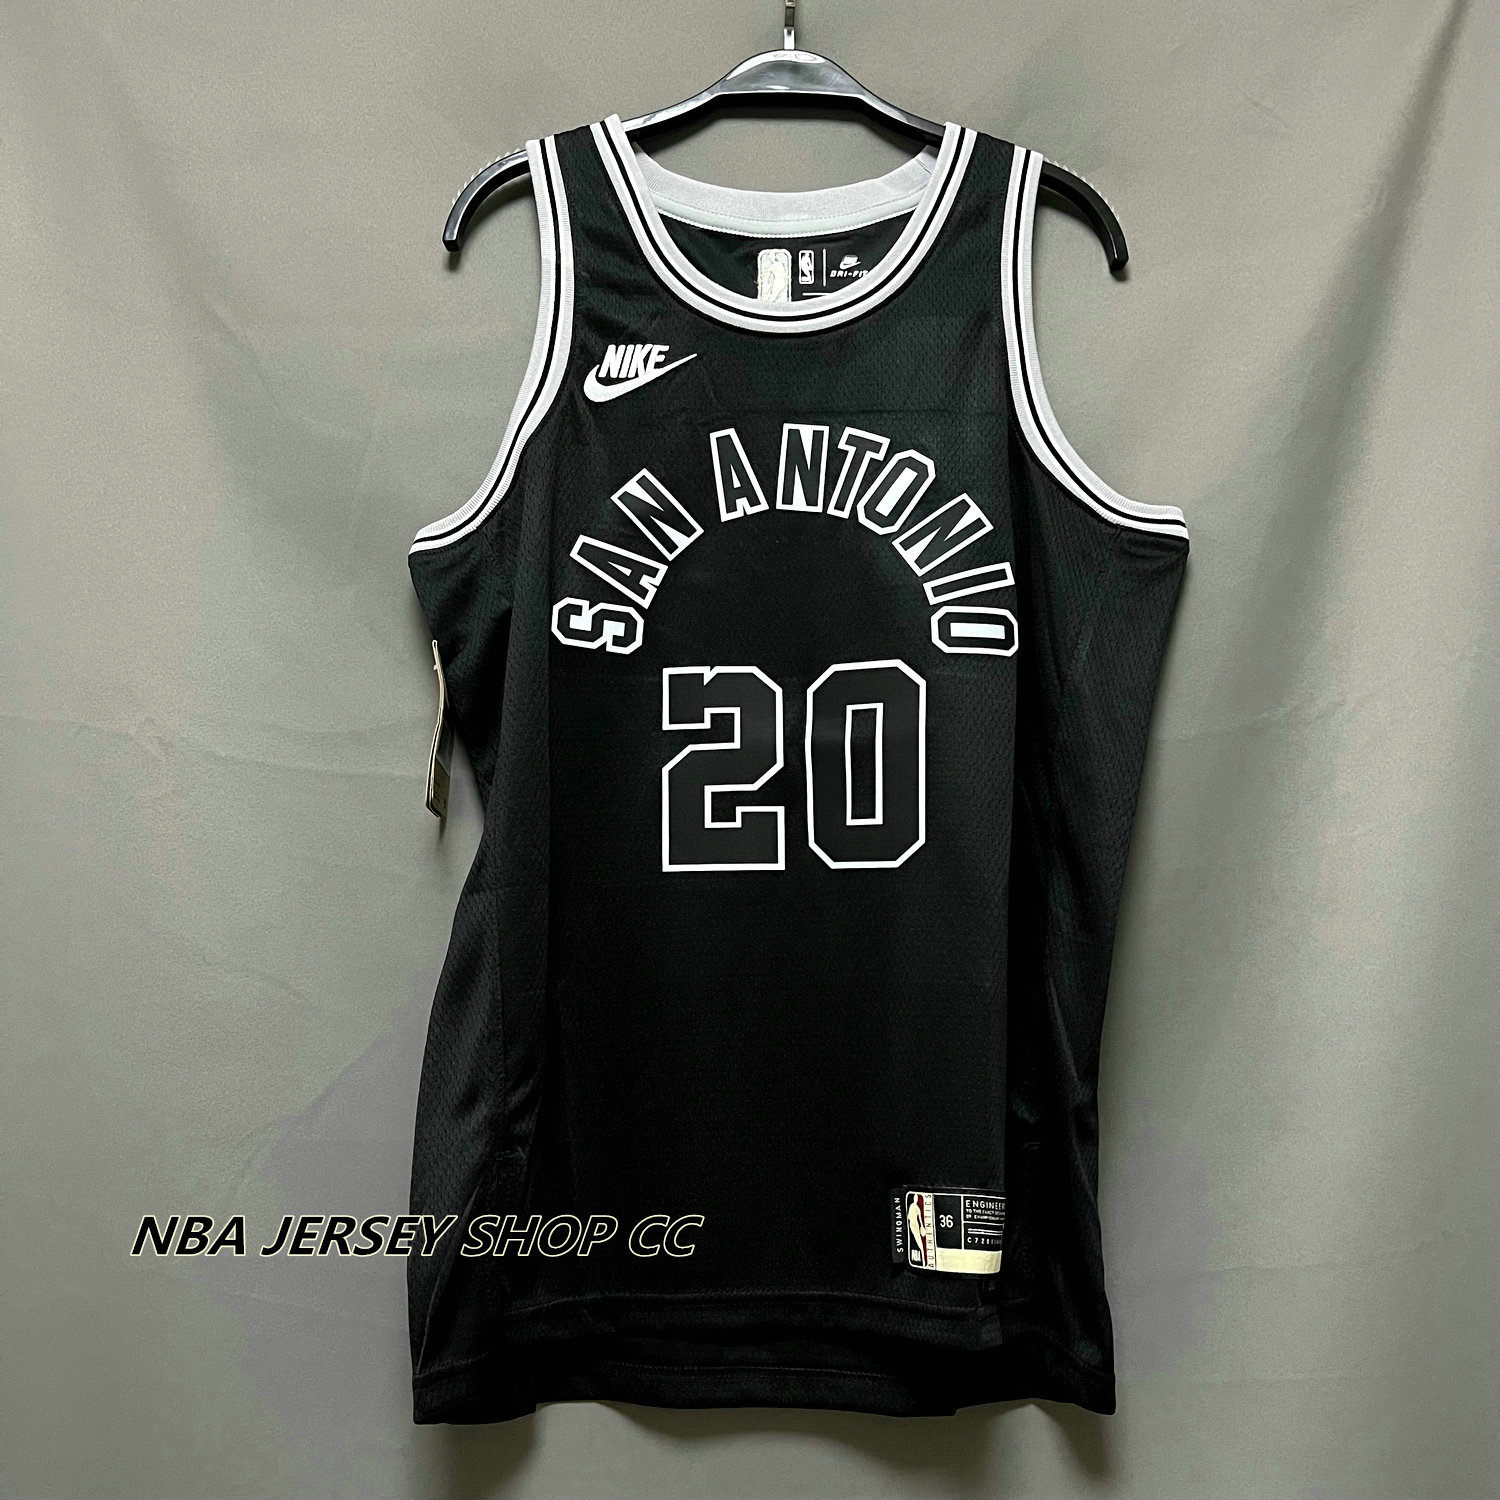 San Antonio Spurs Icon Edition 2022/23 Nike Dri-FIT NBA Swingman